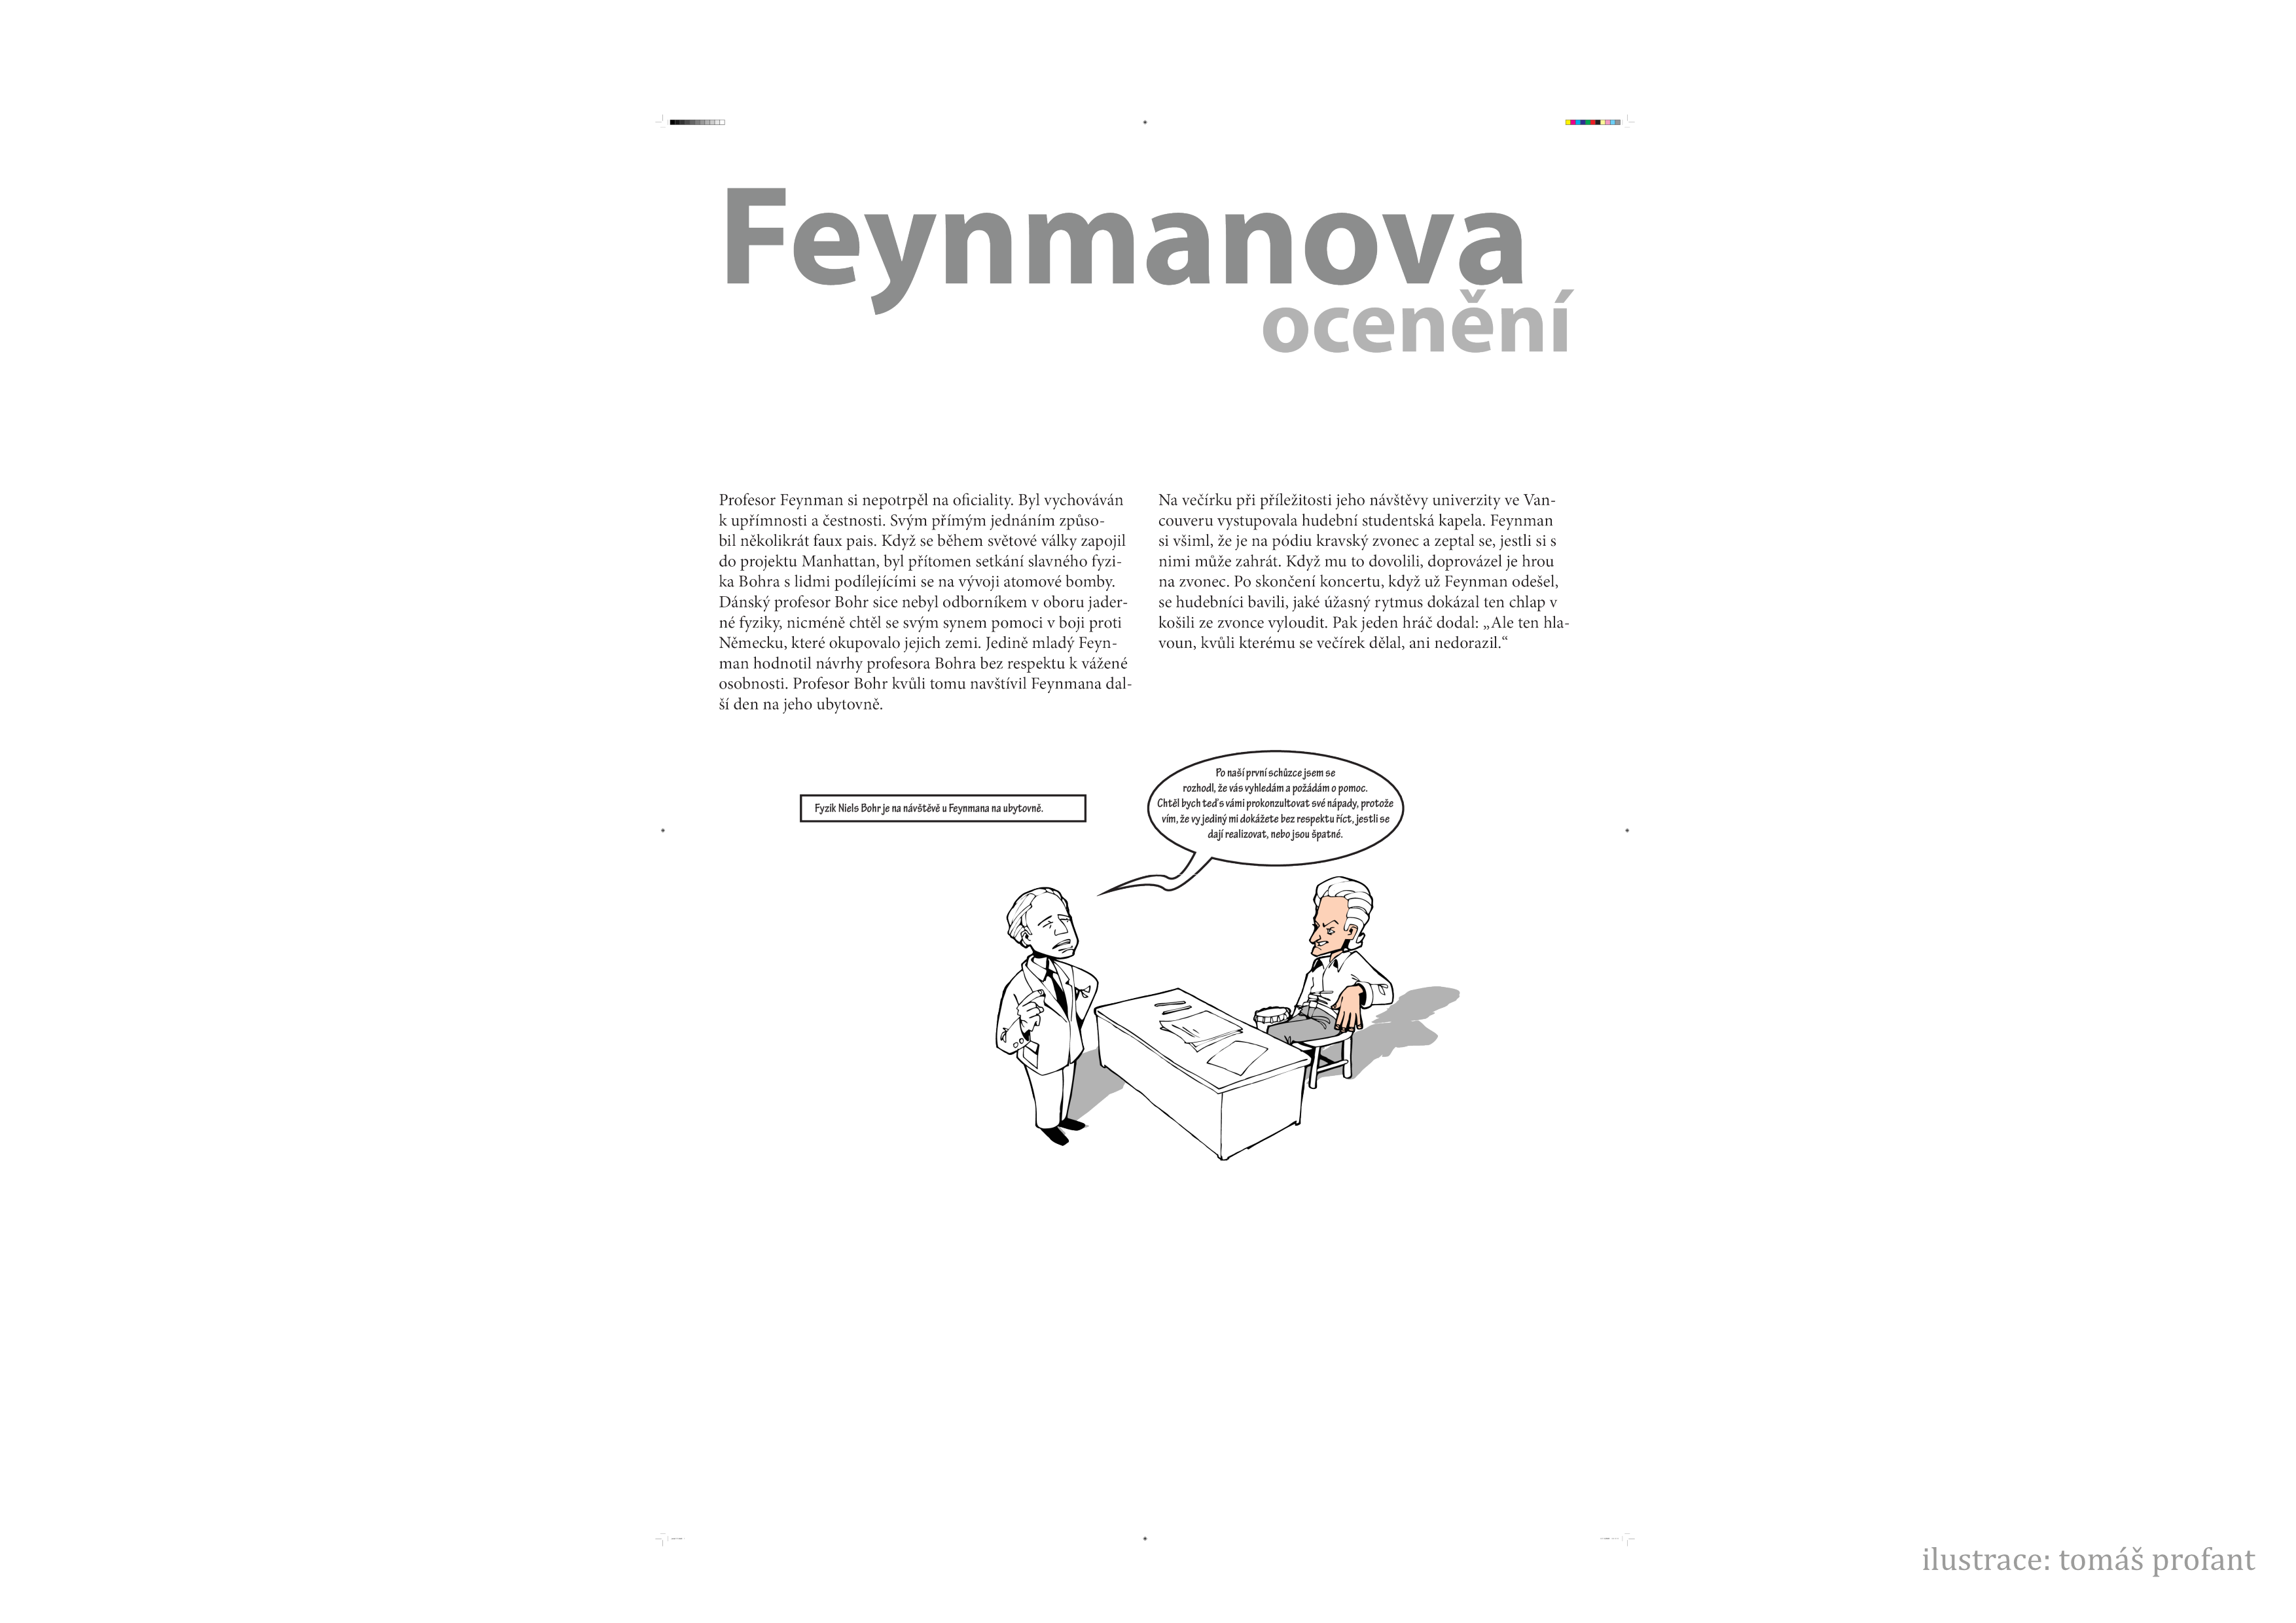 _images/feynman-str%C3%A1nka015.png